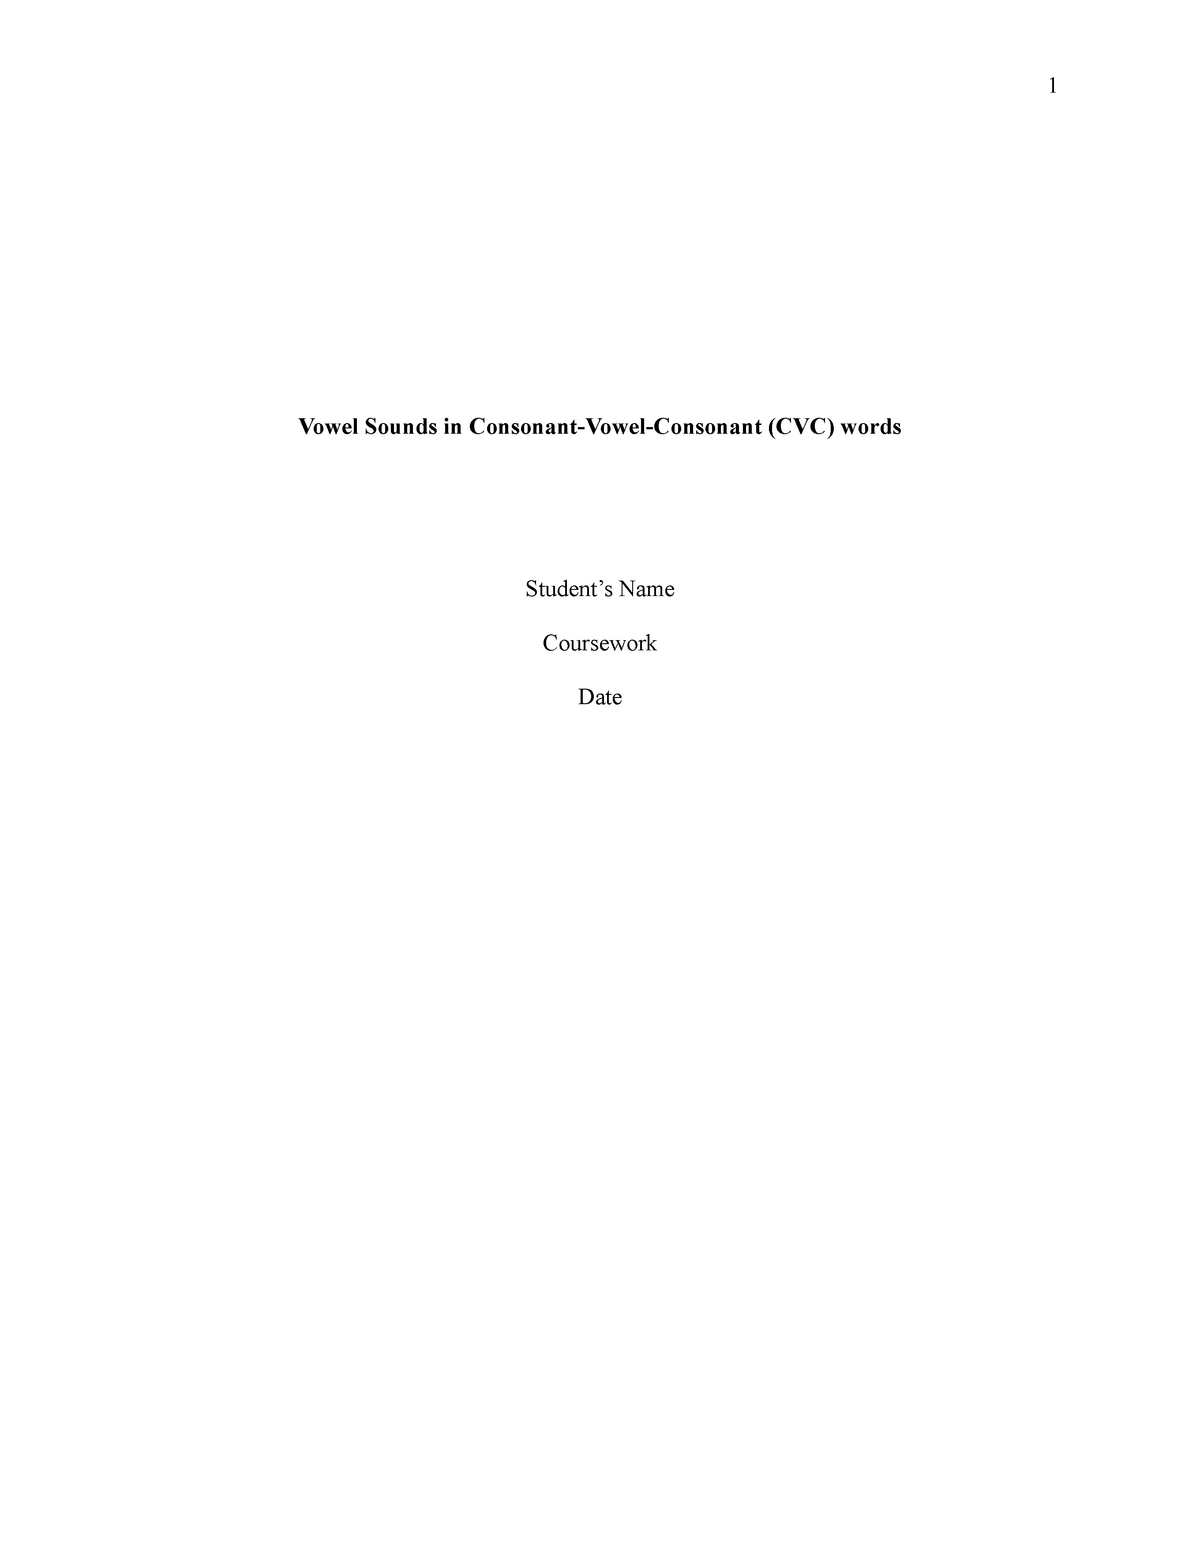 tcisl-project-1-vowel-sounds-in-consonant-vowel-consonant-cvc-words